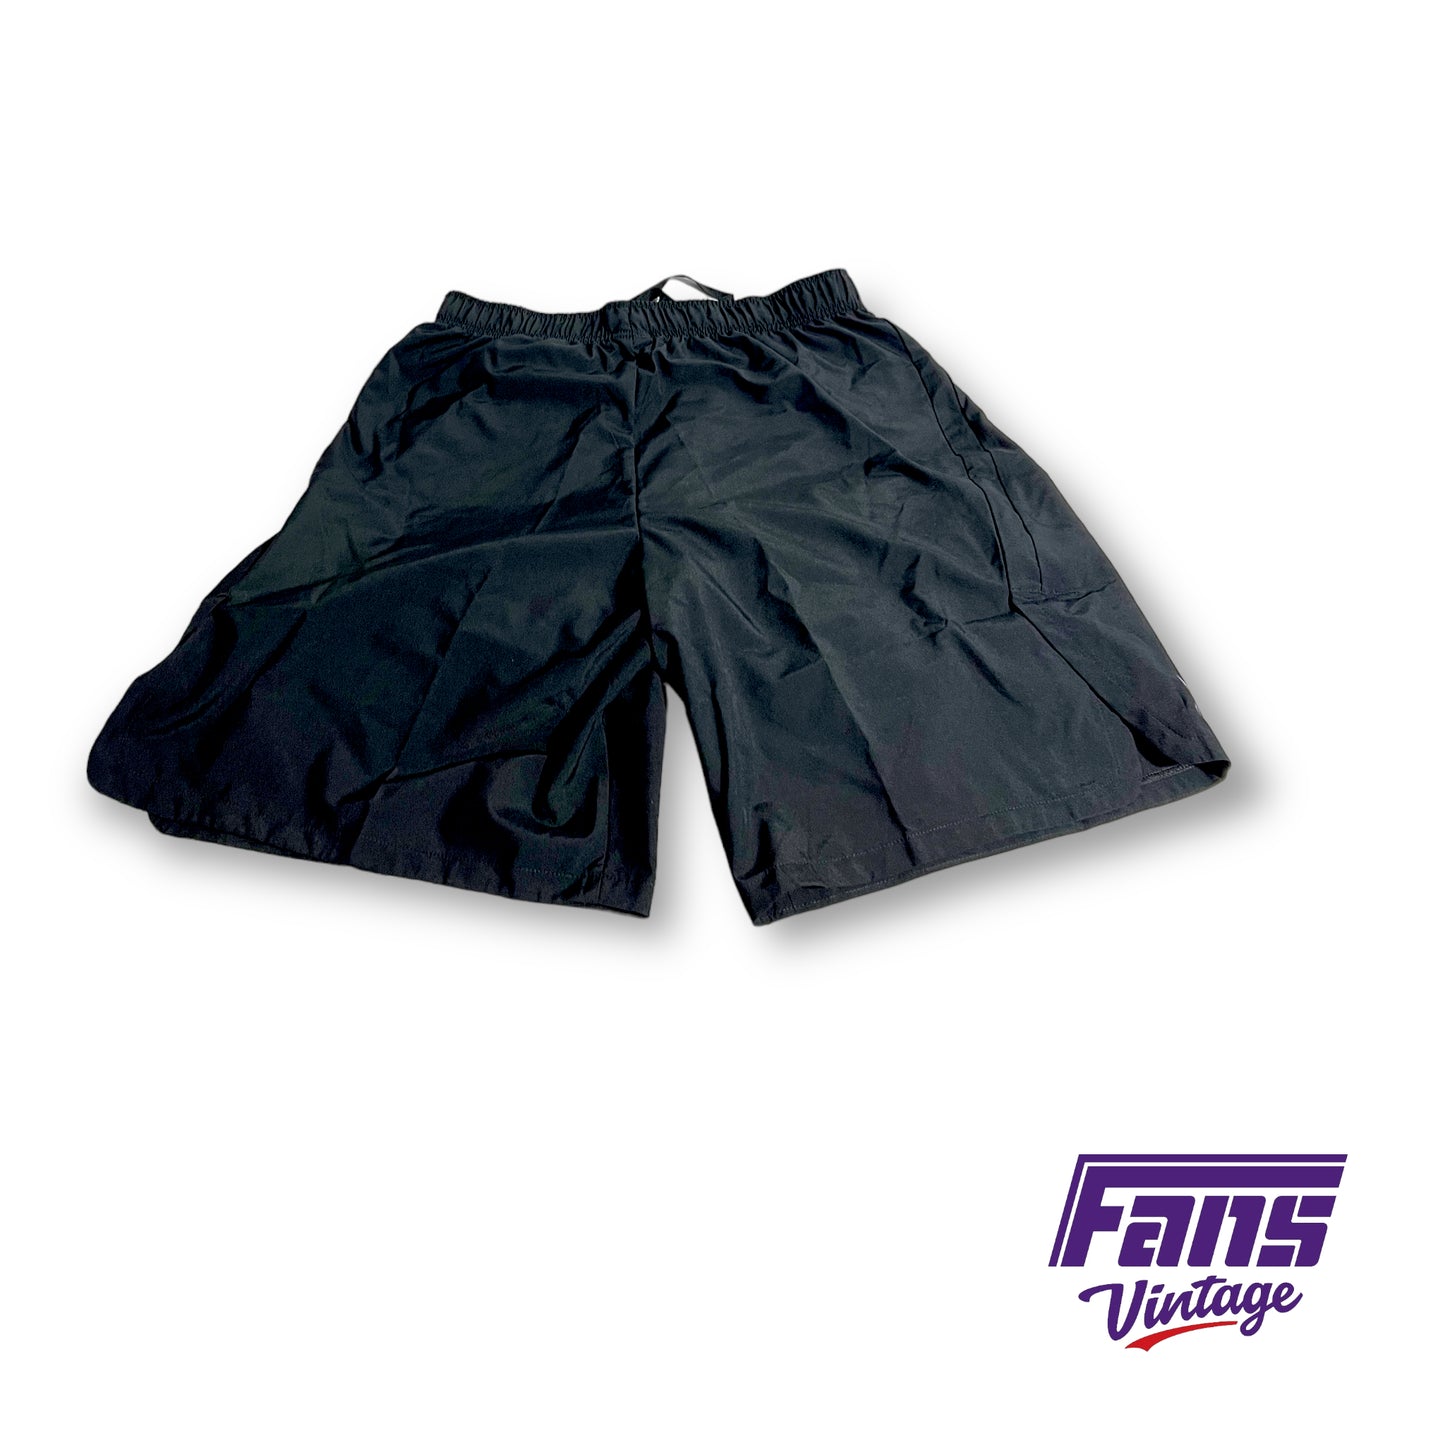 Nike TCU 'on the field' Premium dri-fit training shorts